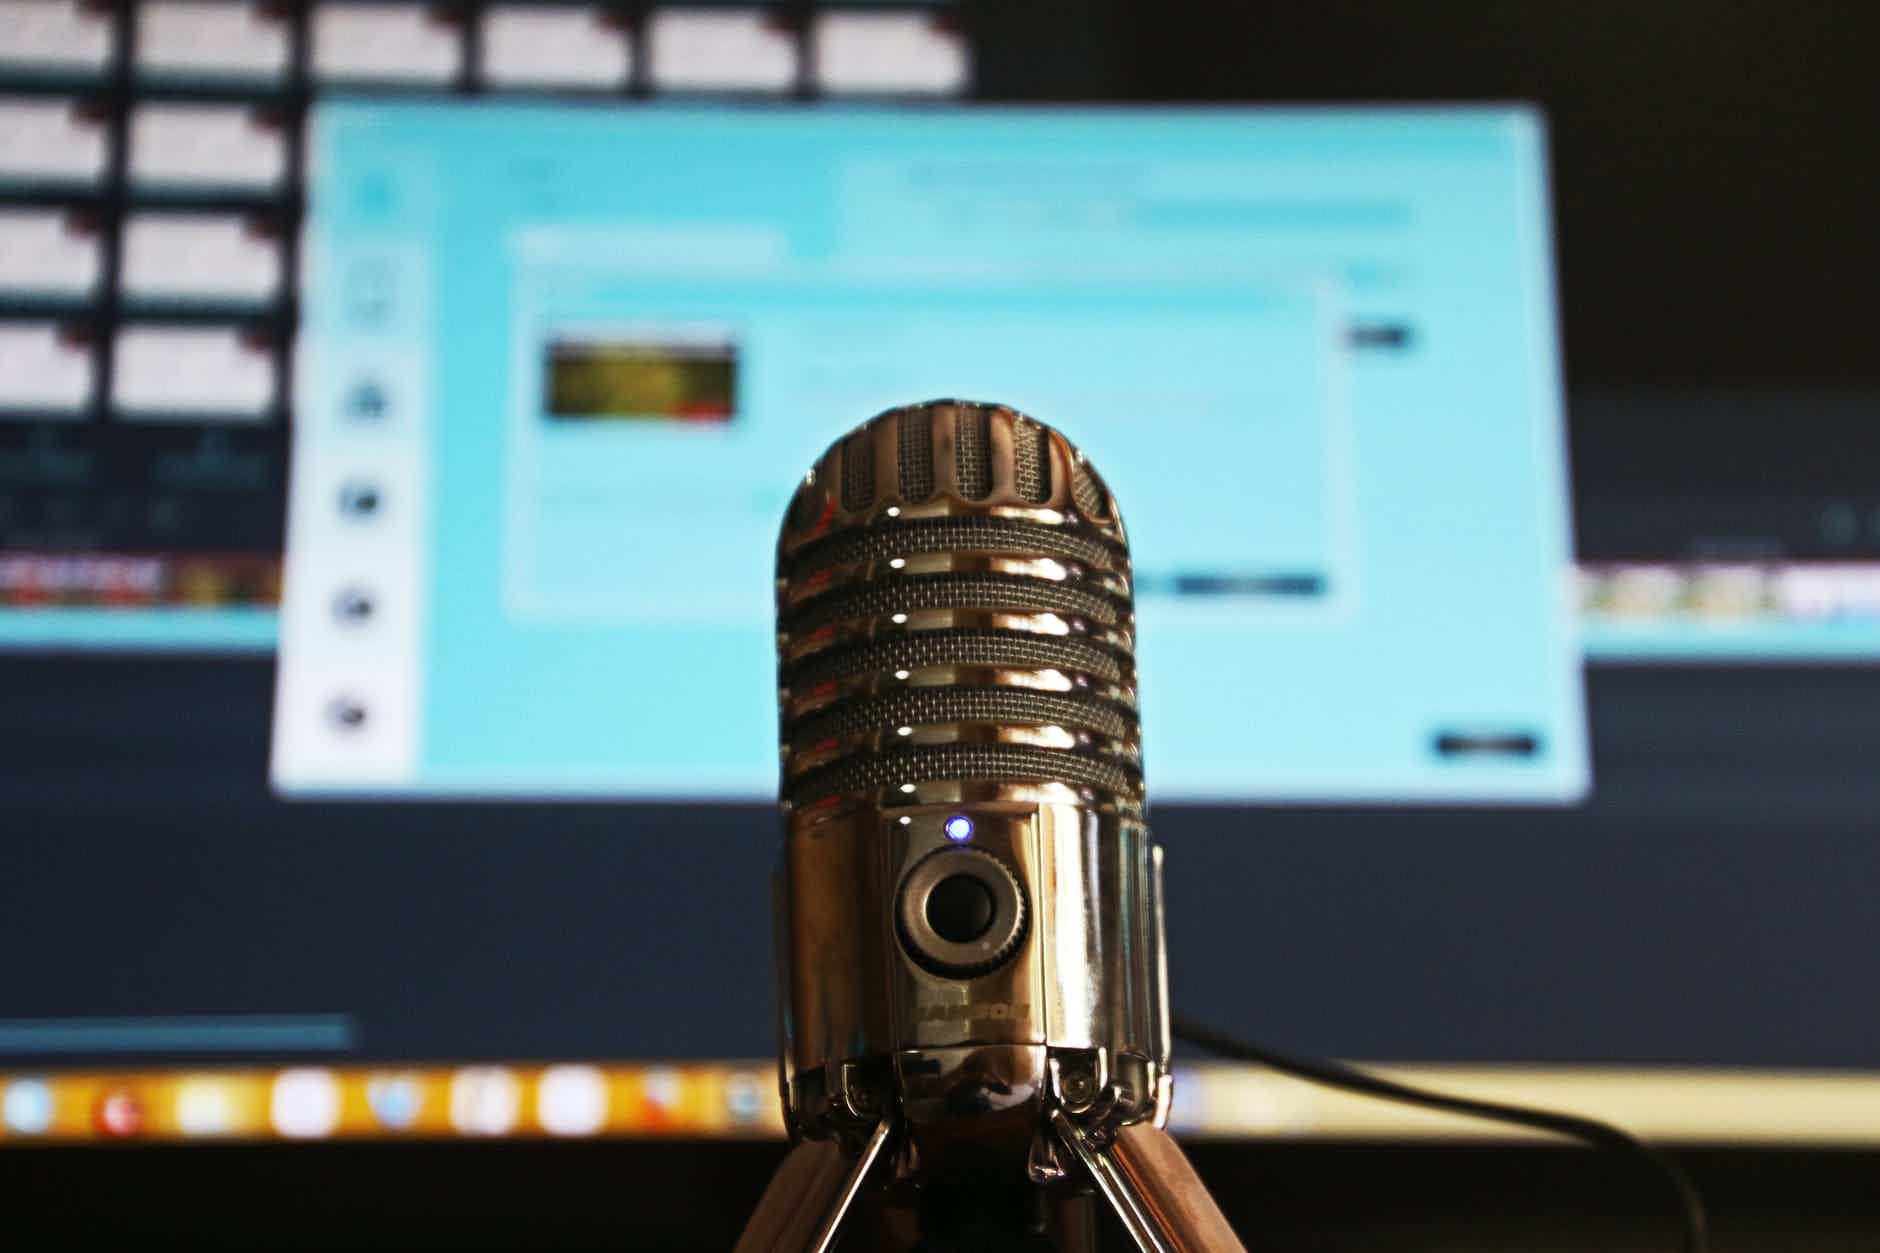 Mas, afinal, quais são os melhores podcasts de finanças? Fonte: Pexels.